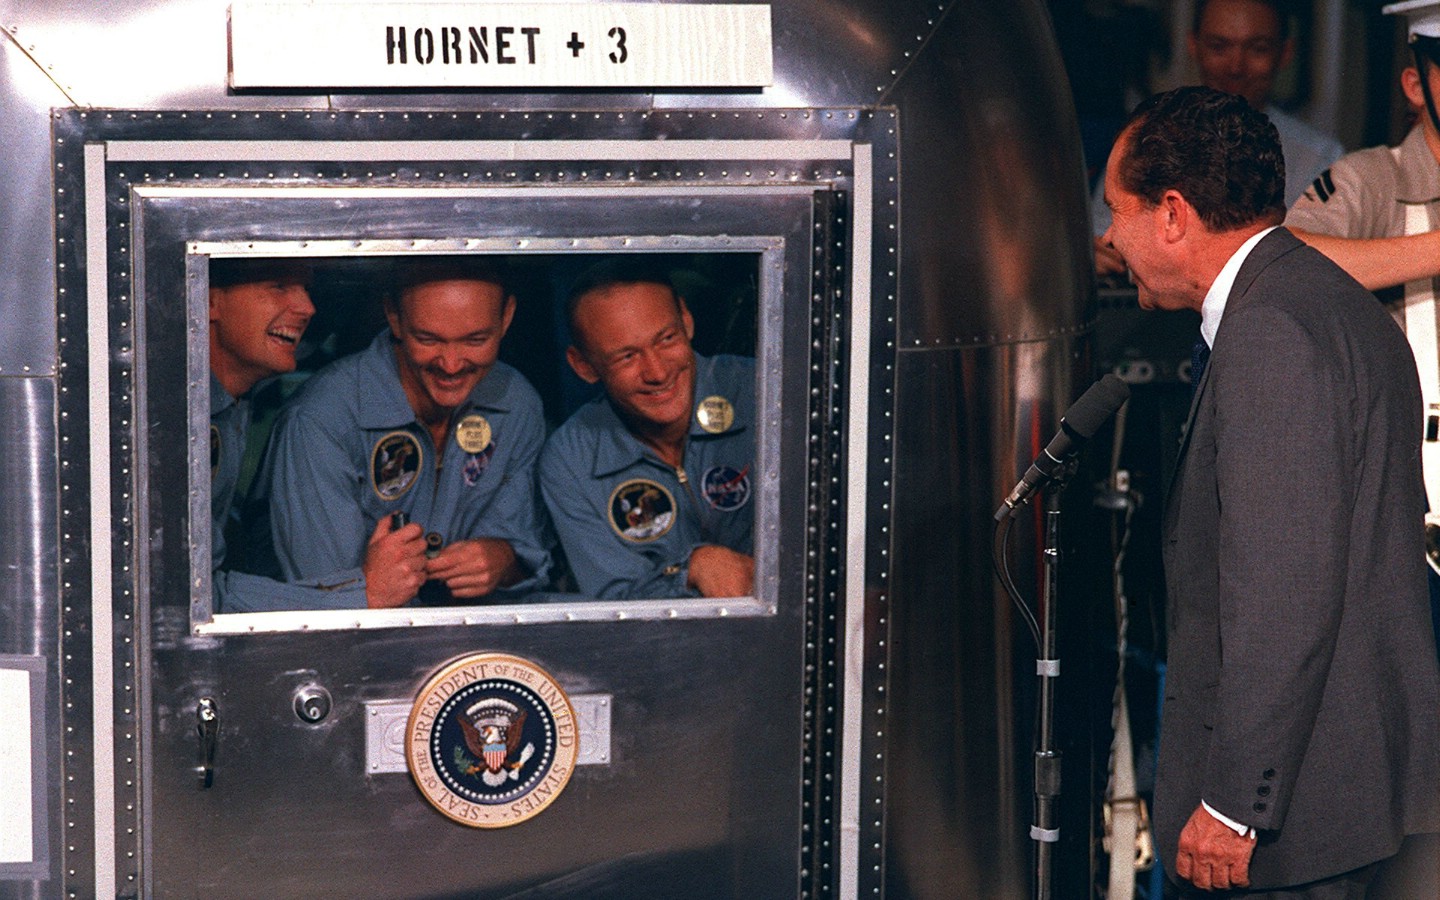 壁纸1440x900One Giant Leap for Mankind  President Nixon visits Apollo 11 crew in quarantine 尼克松总统探望隔离期间的宇航员壁纸 阿波罗11号登月40周年纪念壁纸壁纸 阿波罗11号登月40周年纪念壁纸图片 阿波罗11号登月40周年纪念壁纸素材 人文壁纸 人文图库 人文图片素材桌面壁纸